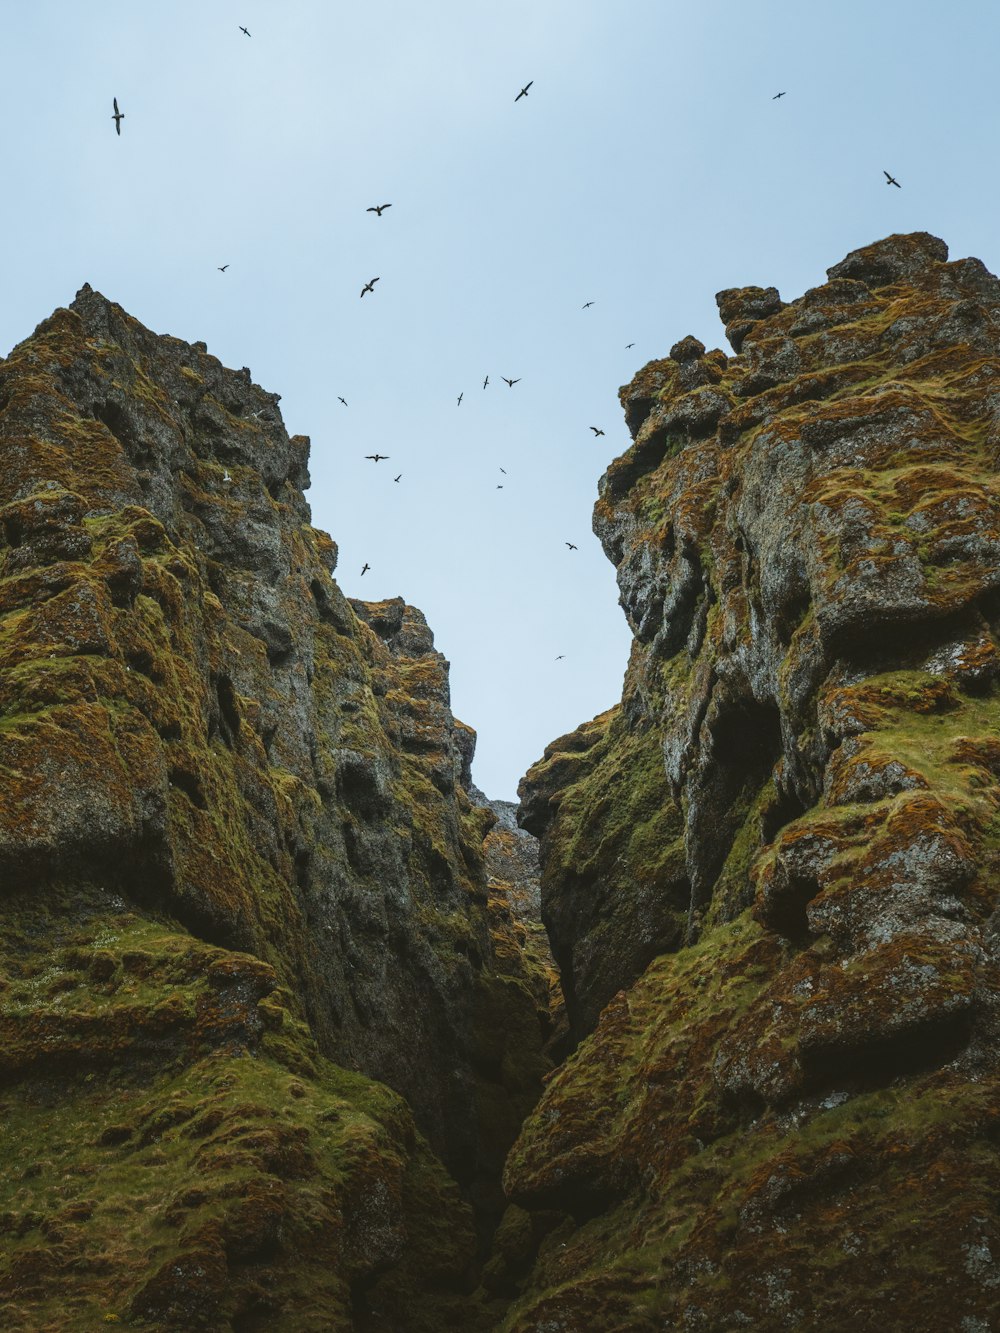 Un groupe d’oiseaux survolant une falaise rocheuse